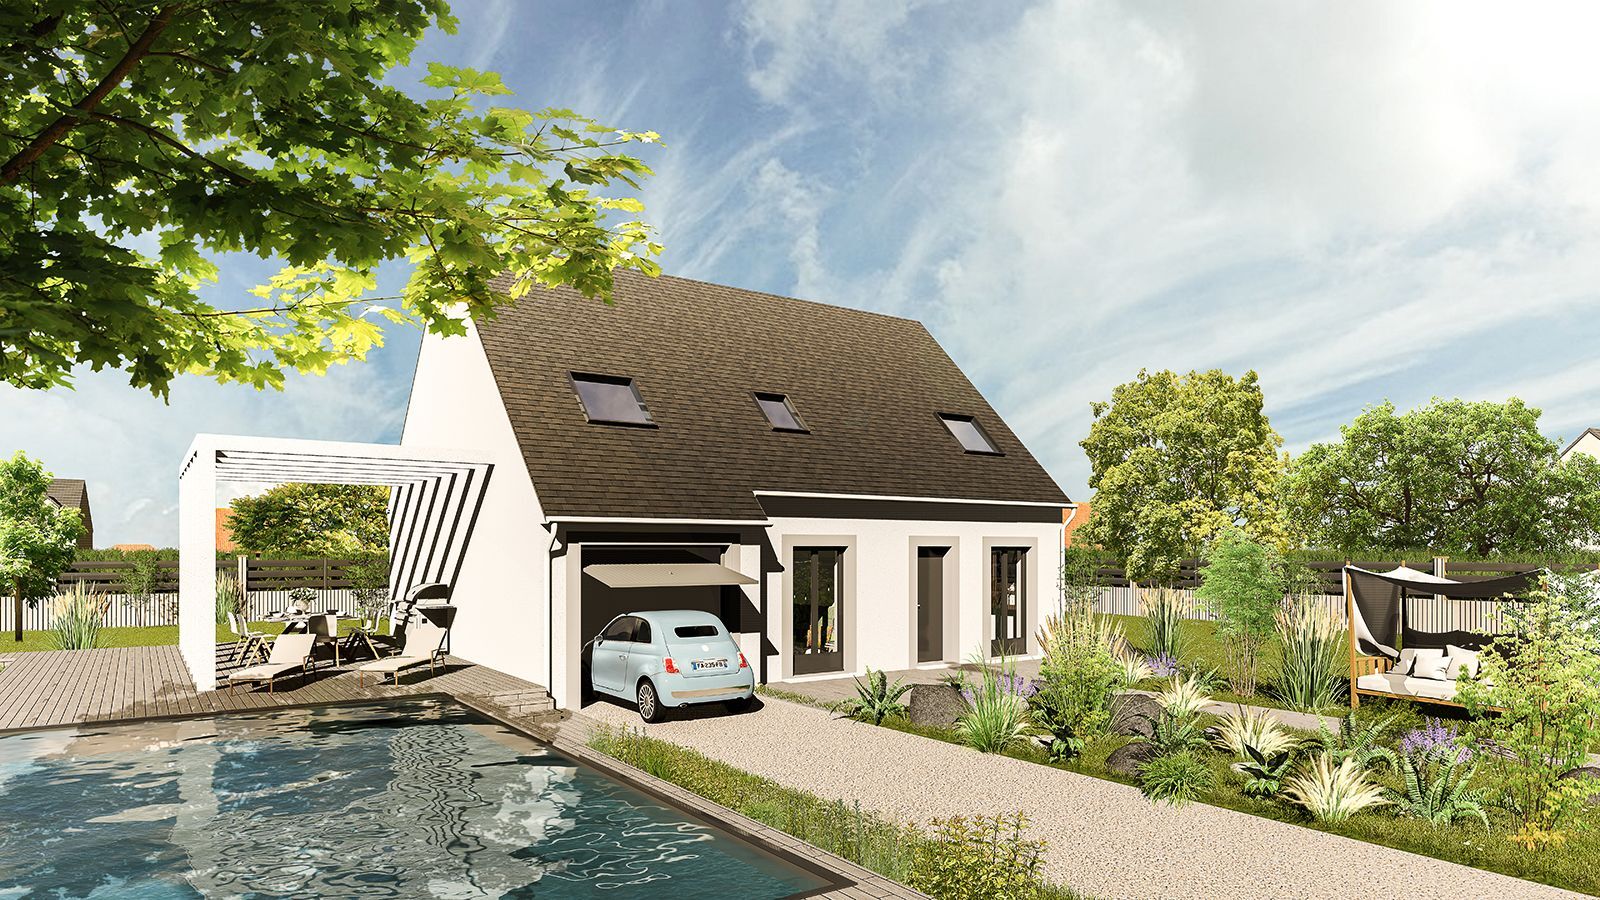 Vente Maison neuve 112 m² à Saint-Remy-sur-Avre 242 939 €